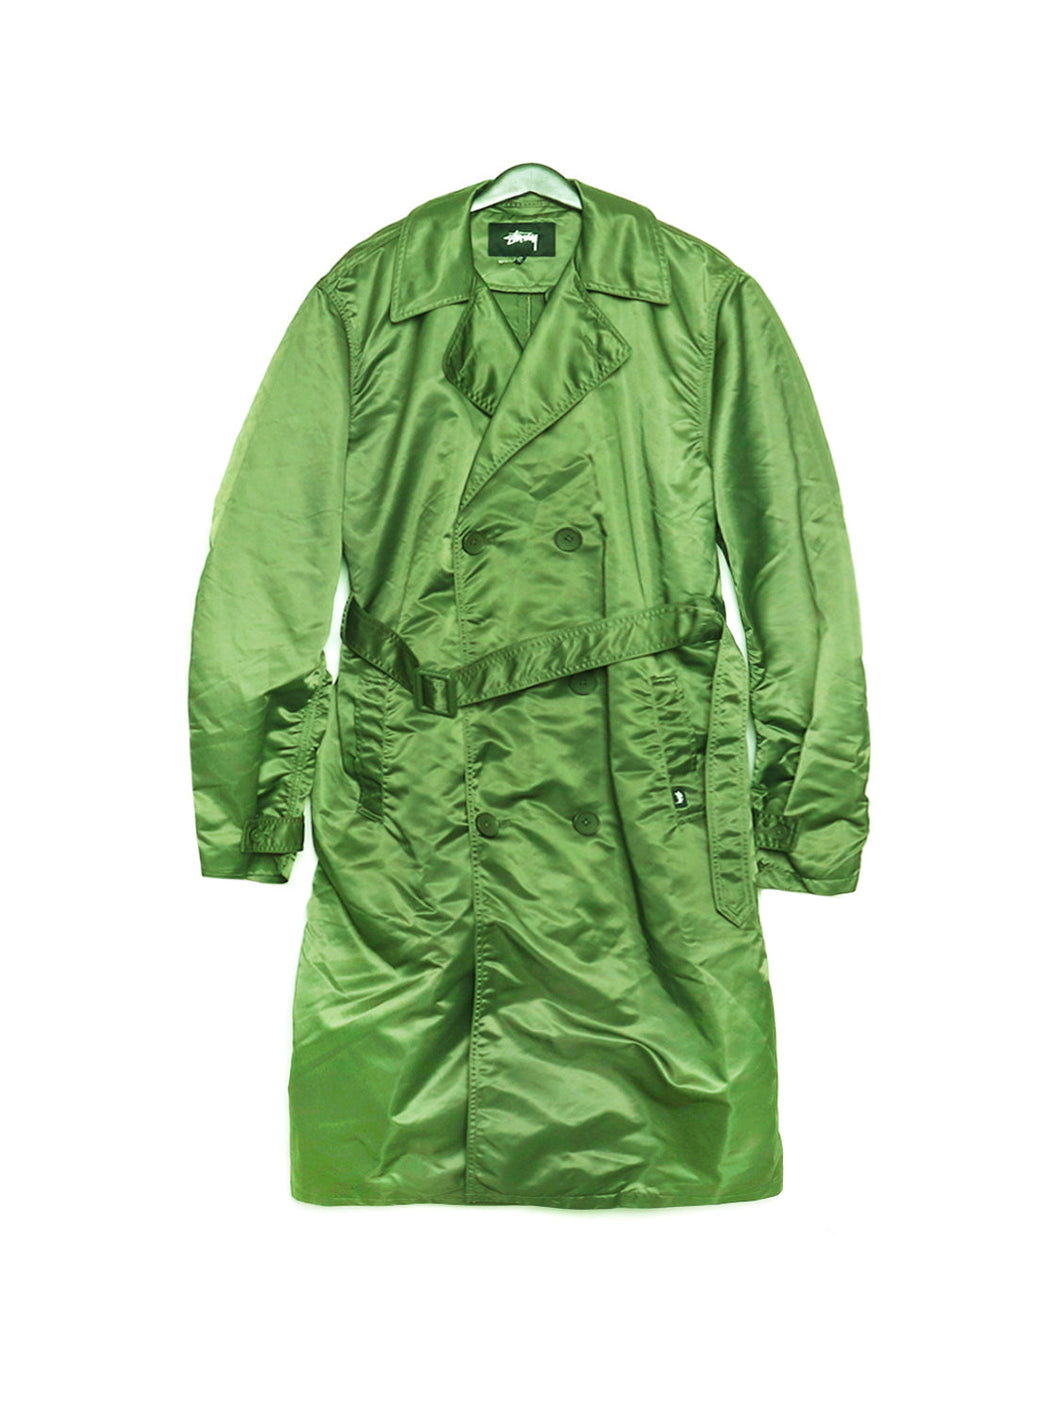 Stussy Green Shiny Trench Coat